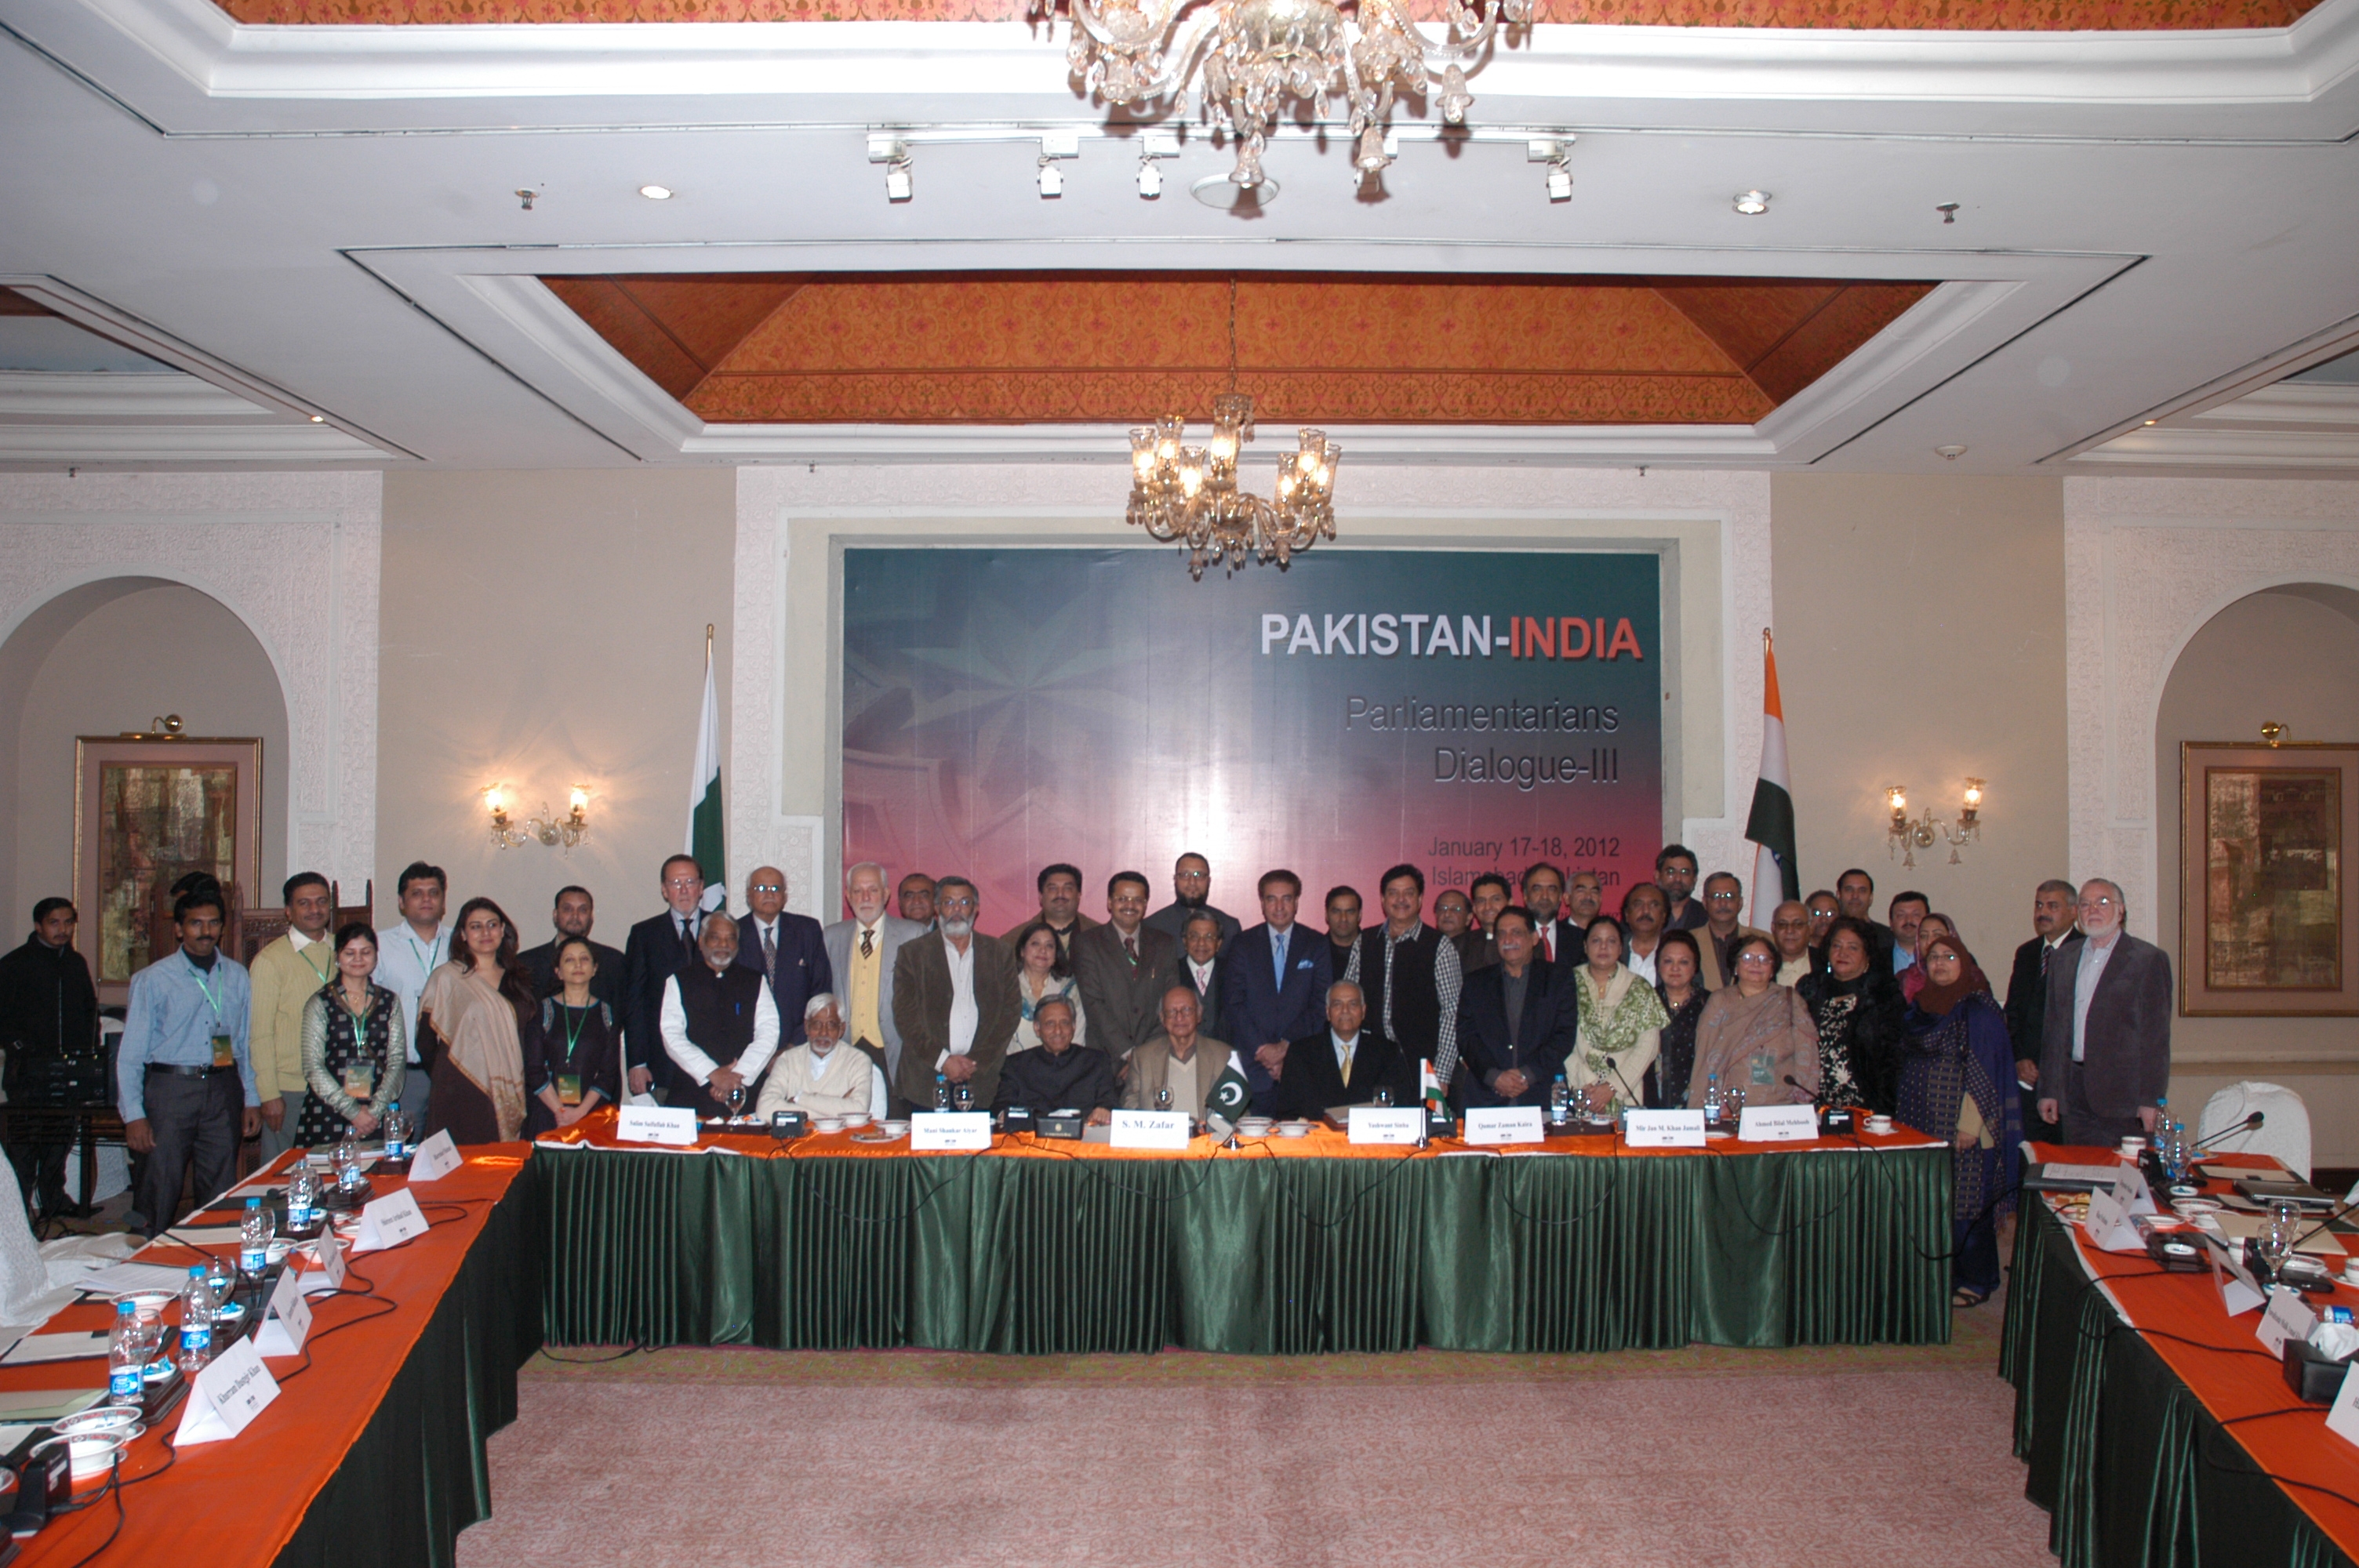 Pakistan-India Parliamentarians Dialogue, January 2012